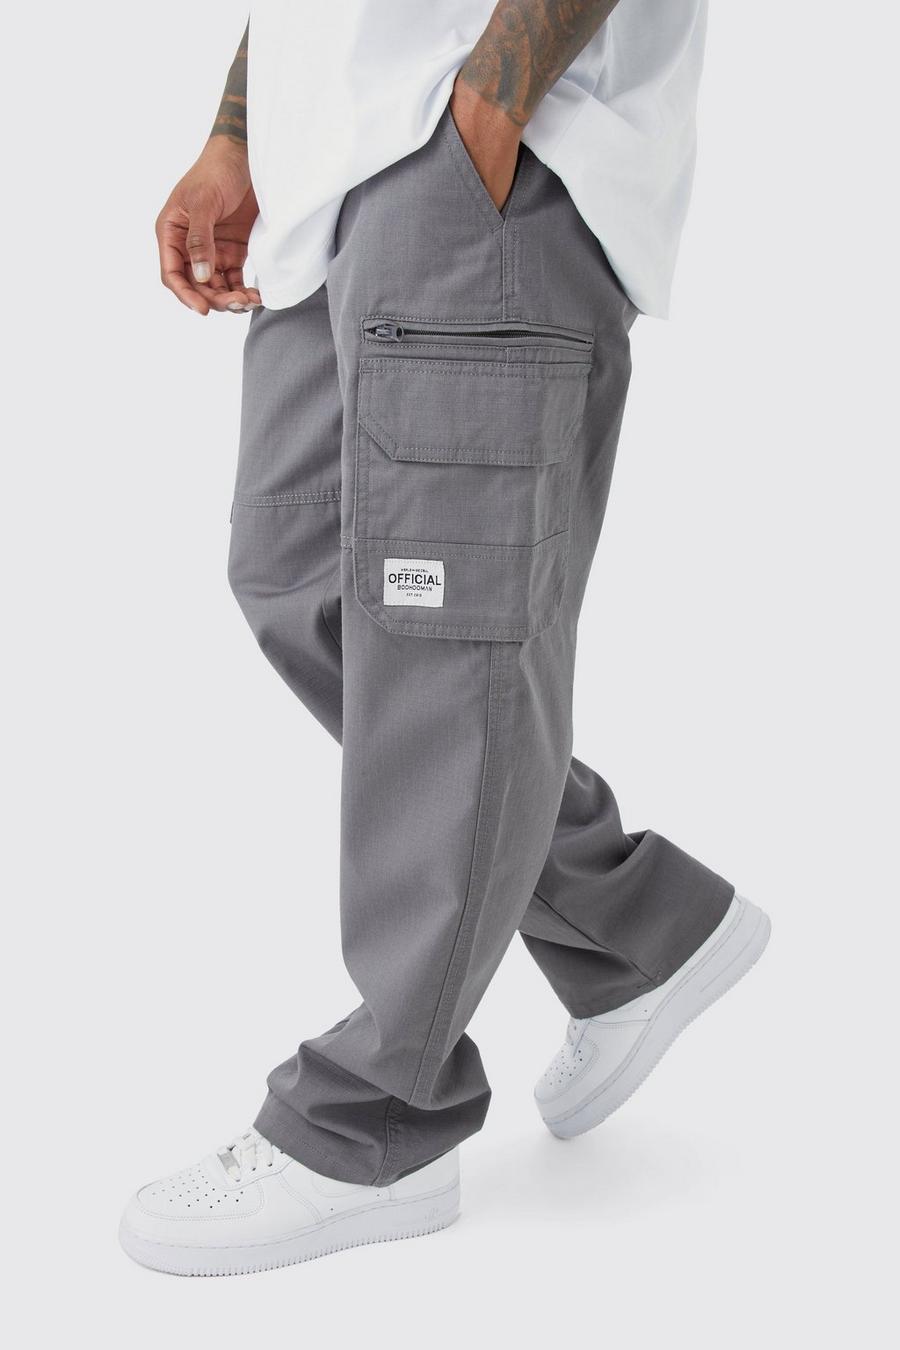 Pantaloni Cargo fissi in nylon ripstop con zip ed etichetta in tessuto, Charcoal image number 1